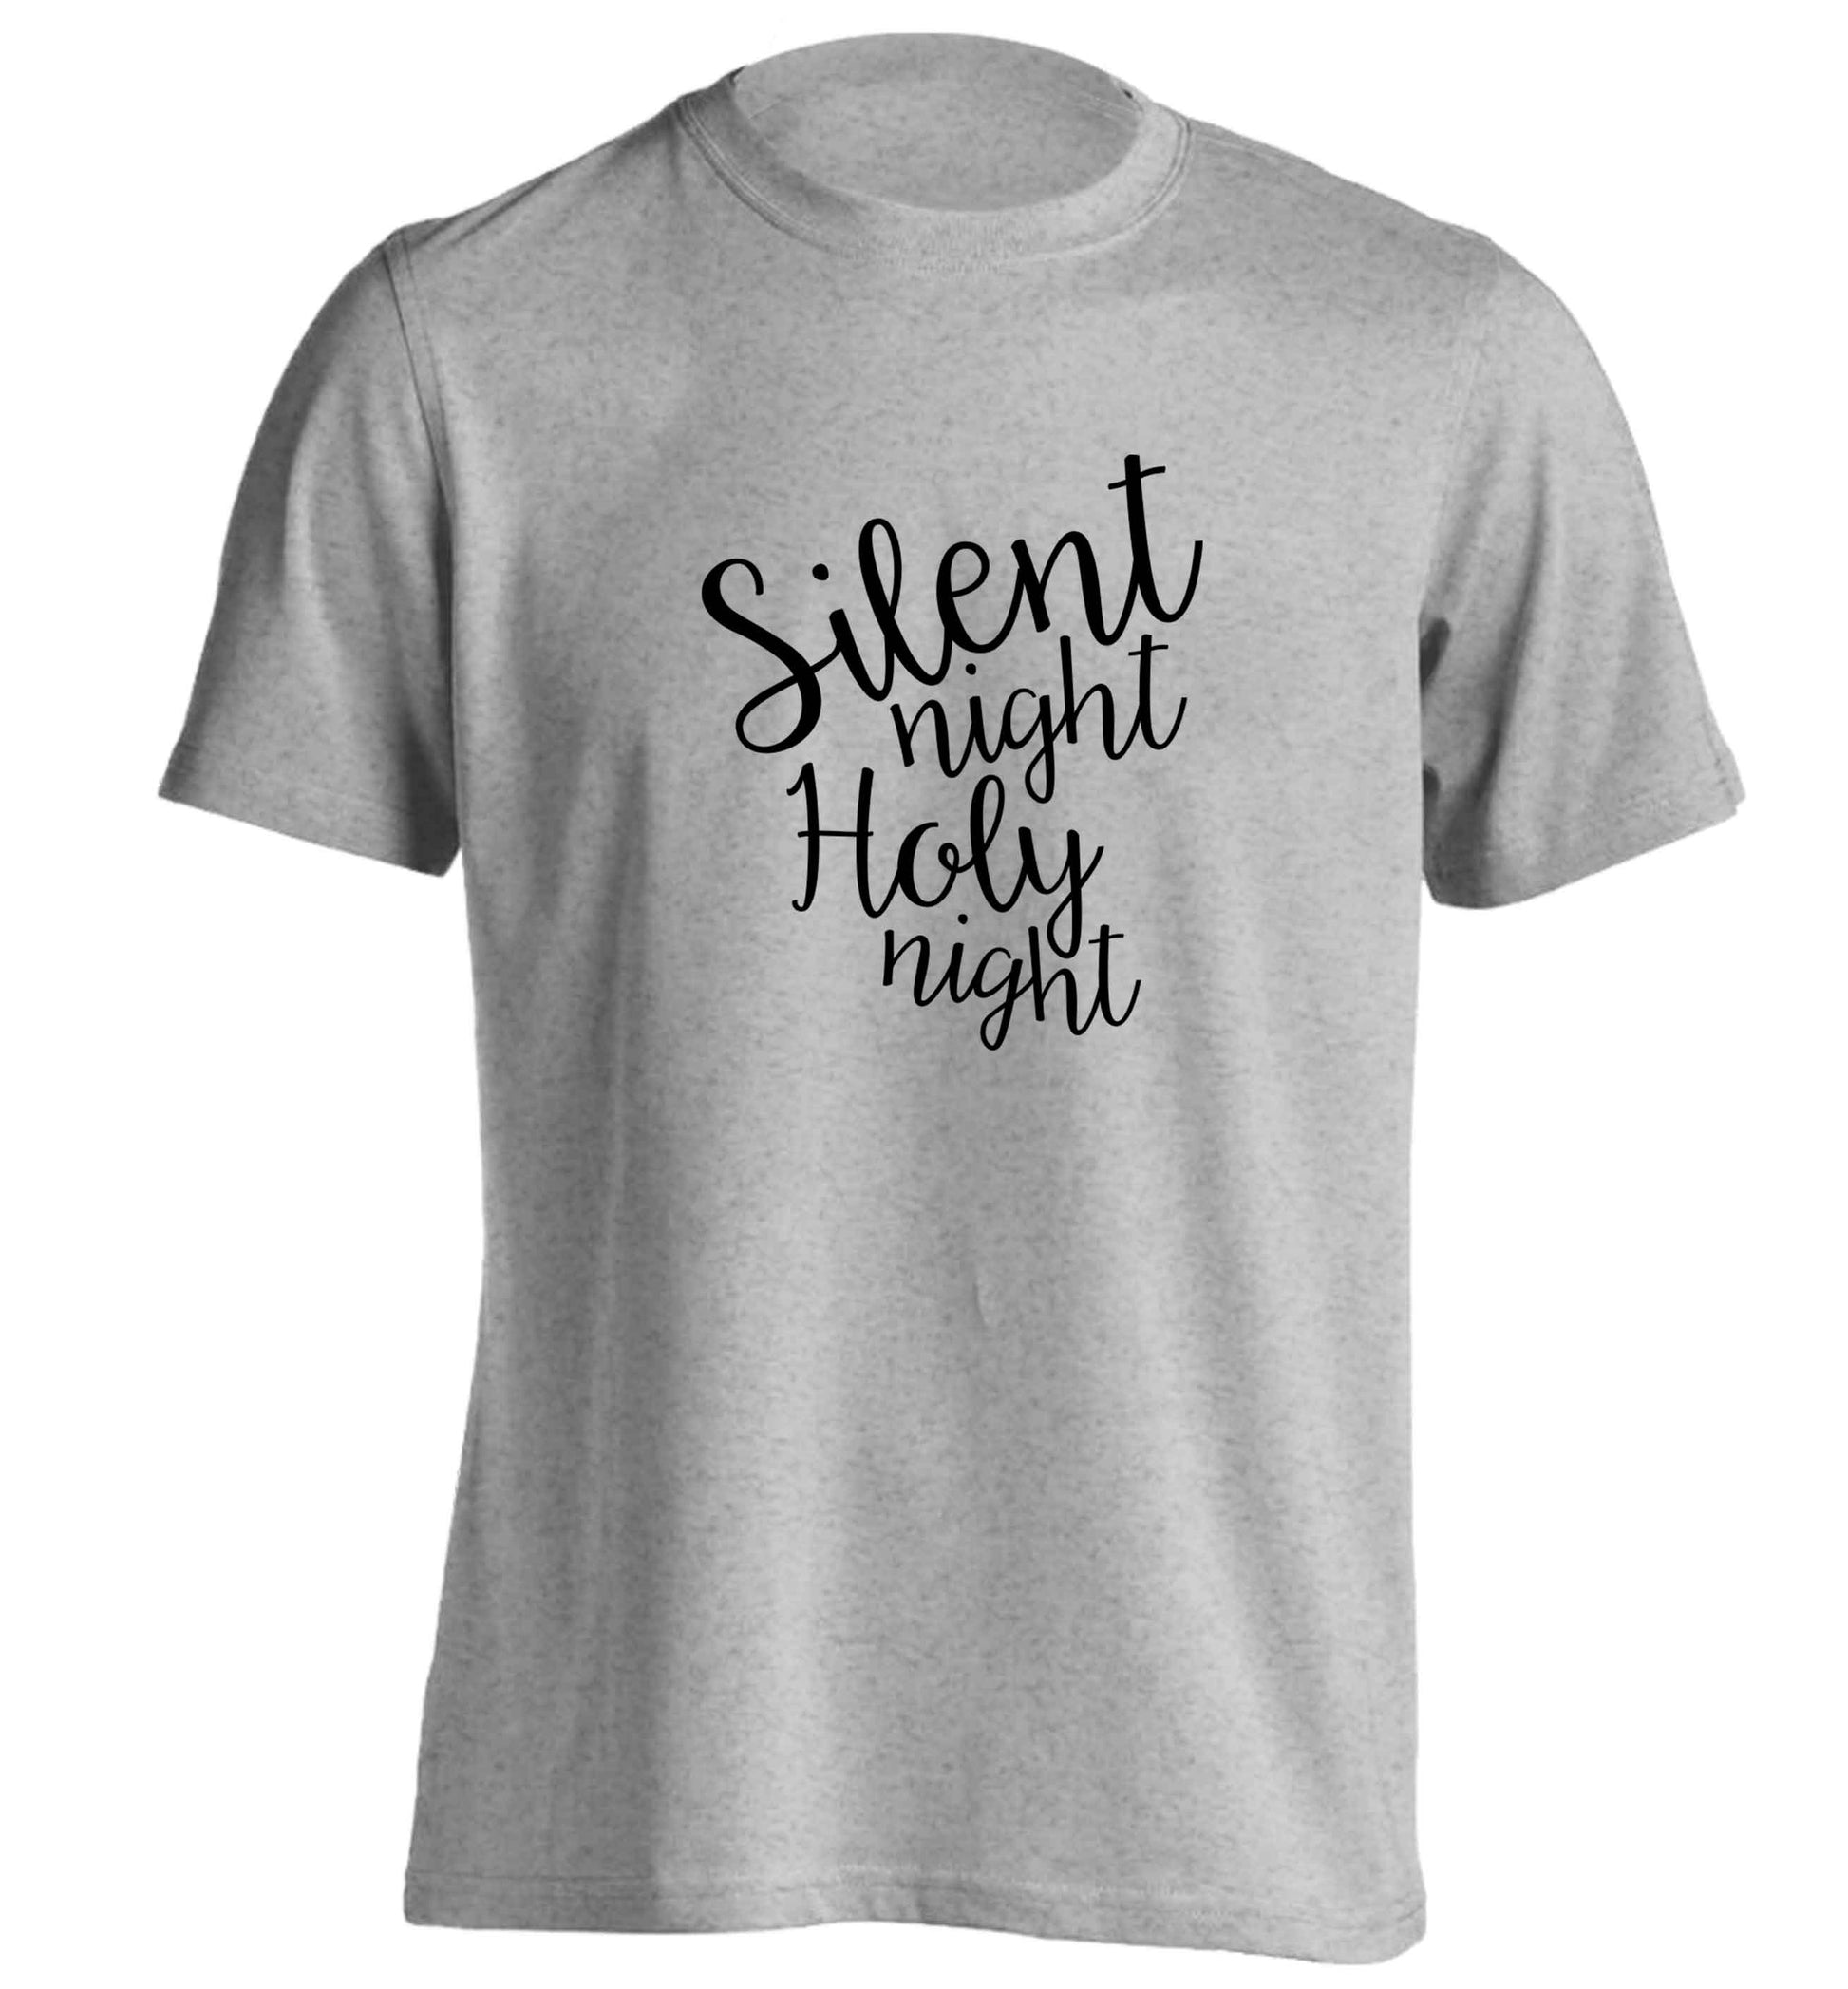 Silent night holy night adults unisex grey Tshirt 2XL